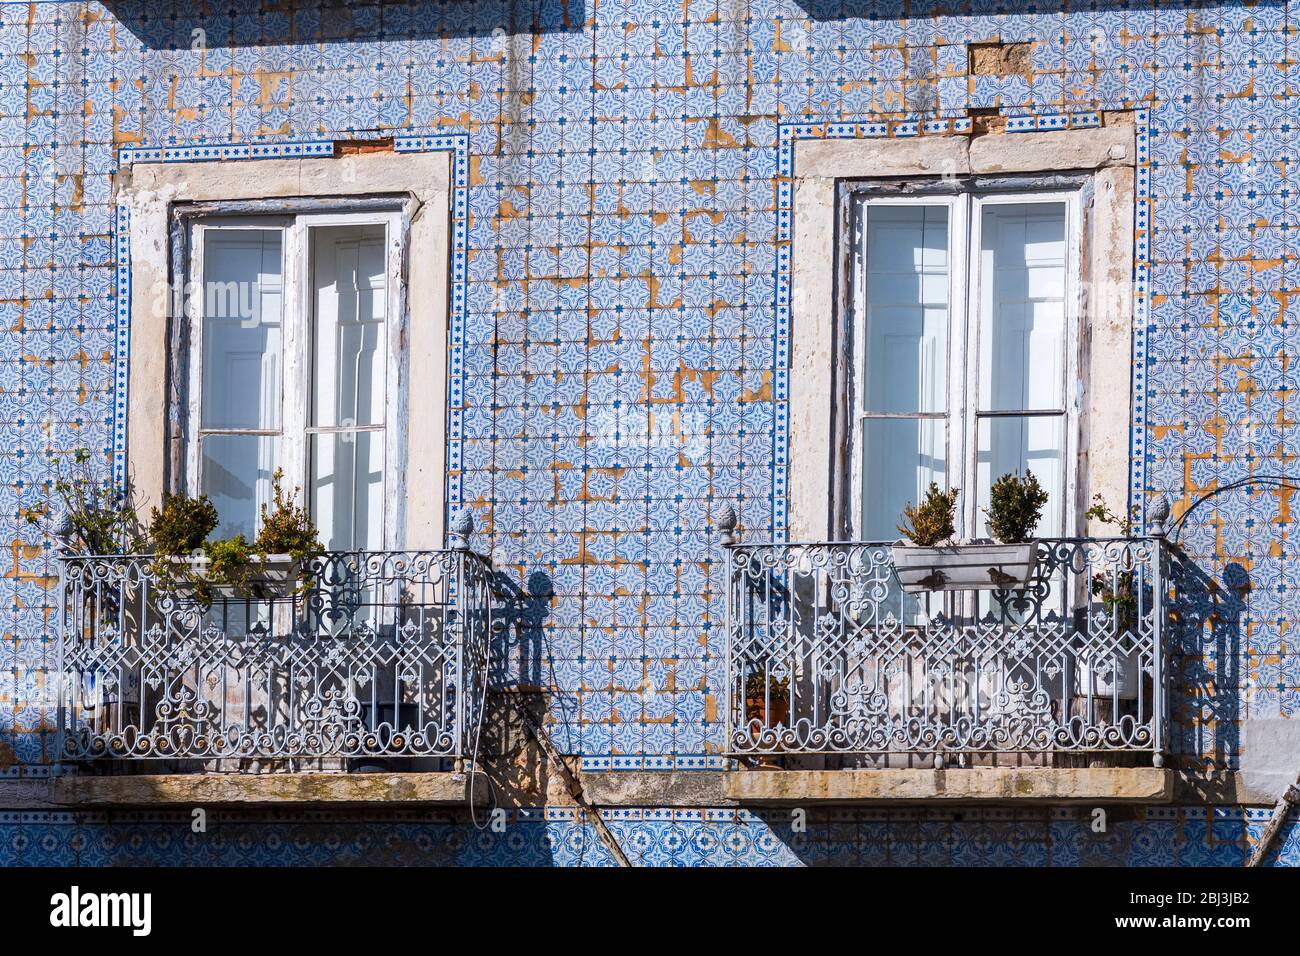 Azulejos típicos portugueses Azulejos y balcones en la zona residencial de Lisboa, Portugal Foto de stock